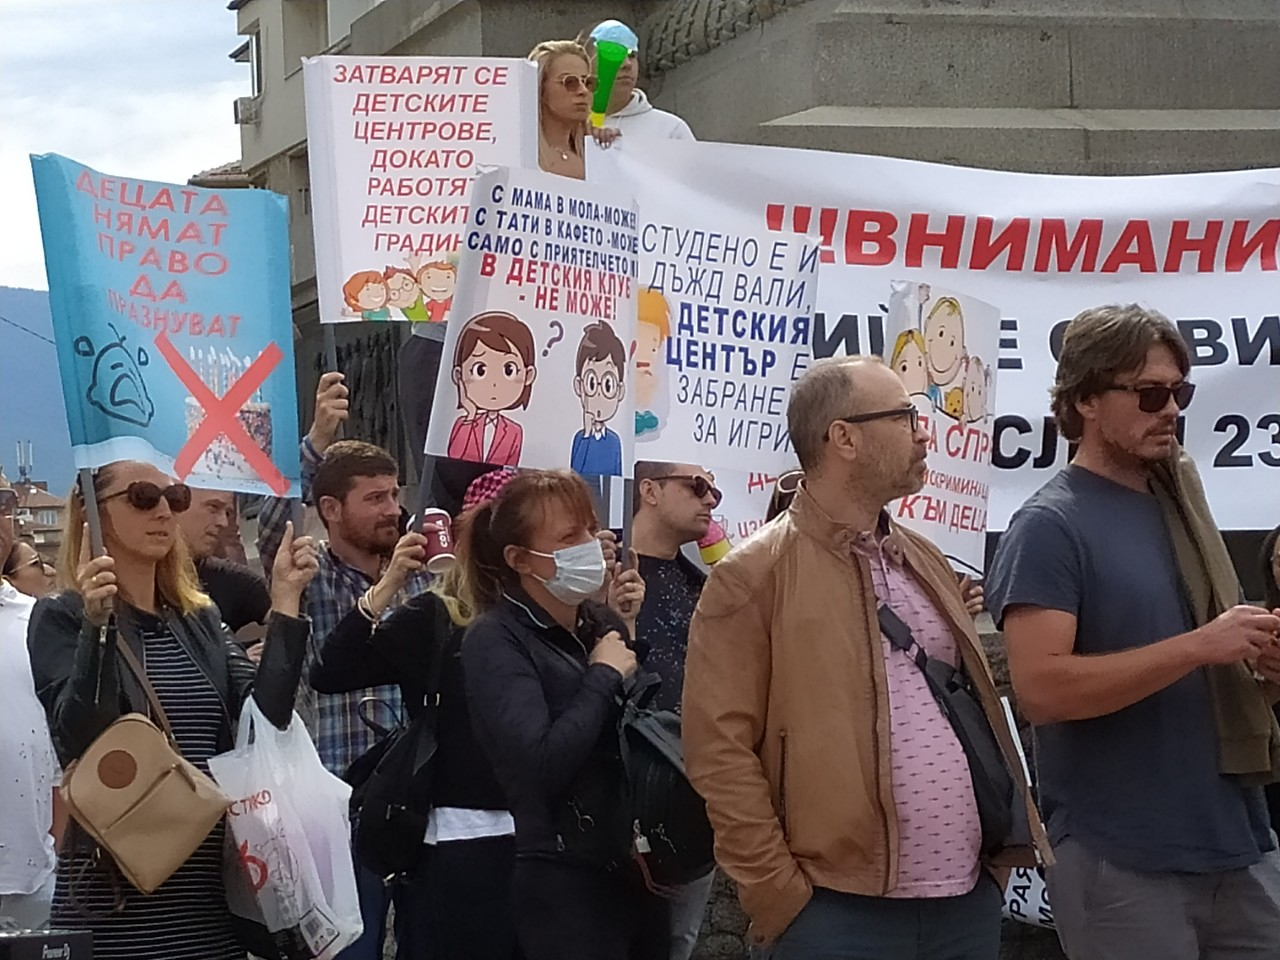 СПА туризмът избяга от протестите и се подмаза на Стела Балтова